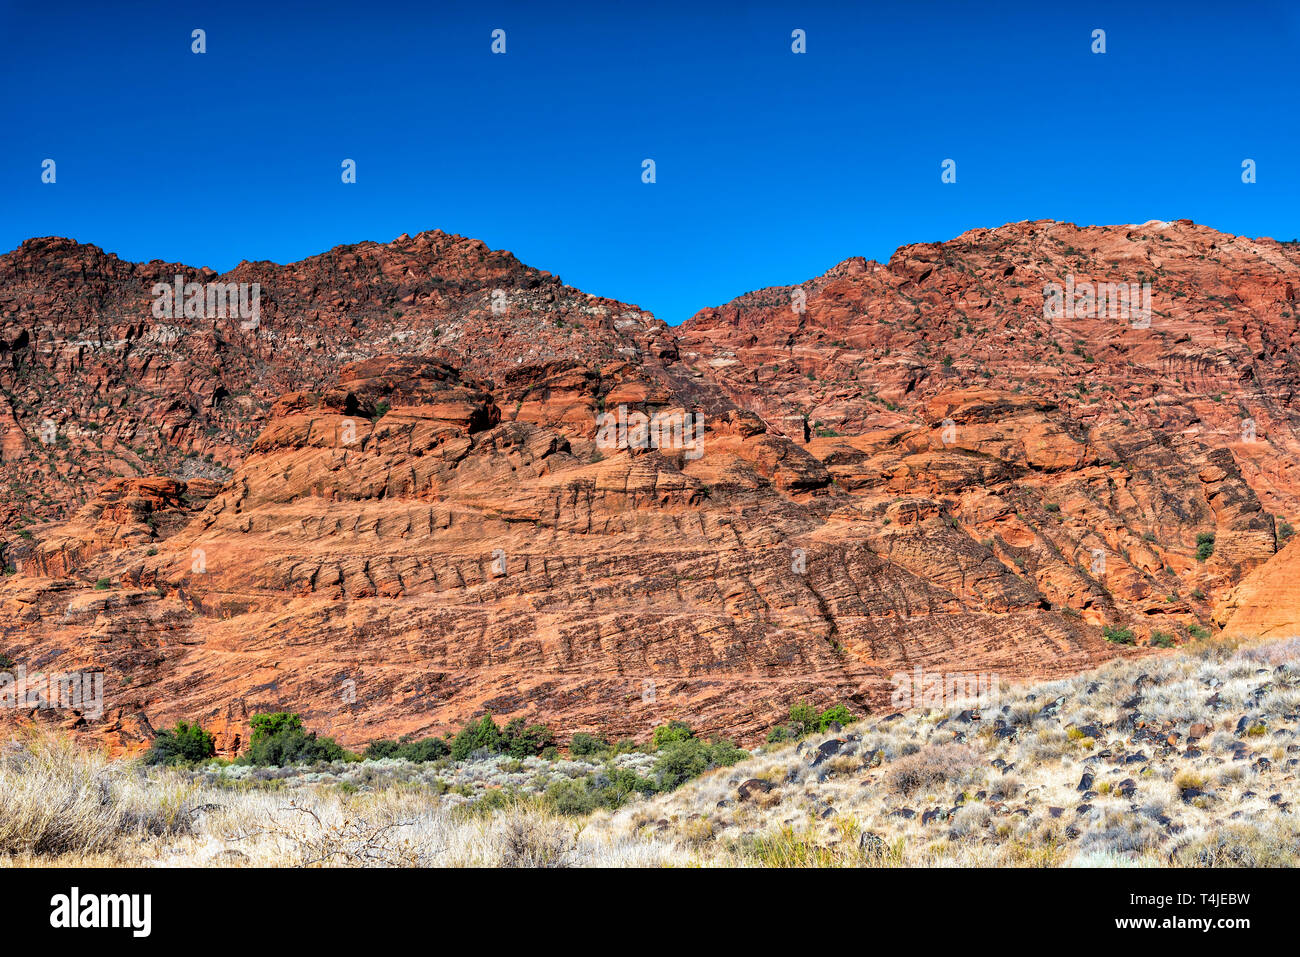 Piccolo deserto colline coperte di sagebrush con alberi verdi alla base od un ripido rosso arancio canyon parete di roccia sotto un cielo blu. Foto Stock